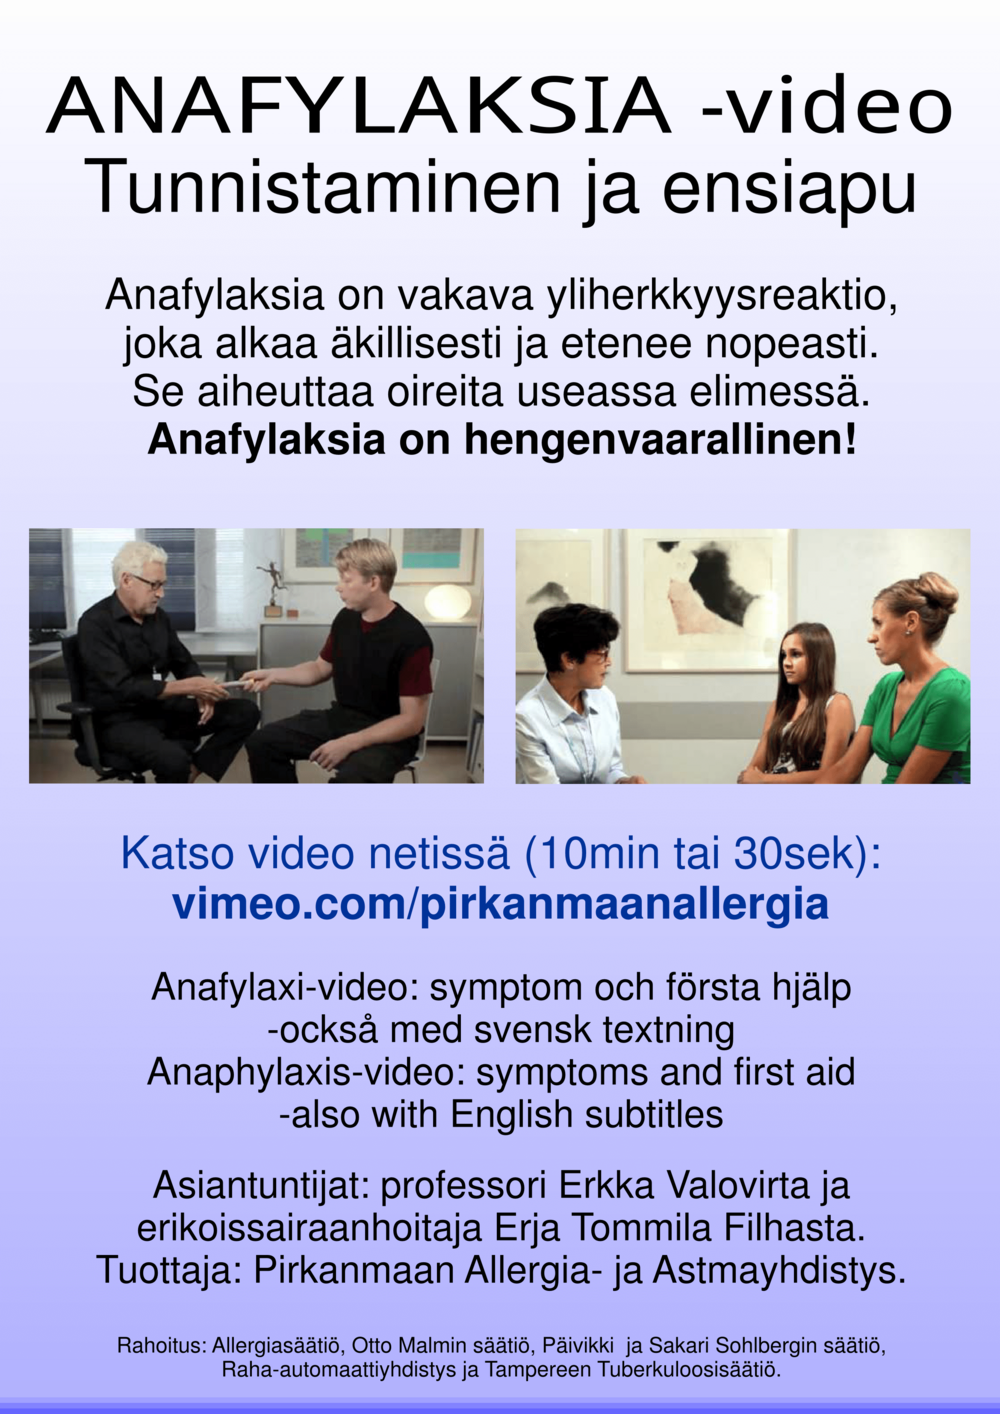 Anafylaksiavideoiden mainos, jossa kaksi kuvaa videoilla esiintyvistä henkilöistä ja videoiden nimet, nettiosoite ja rahoittajat.